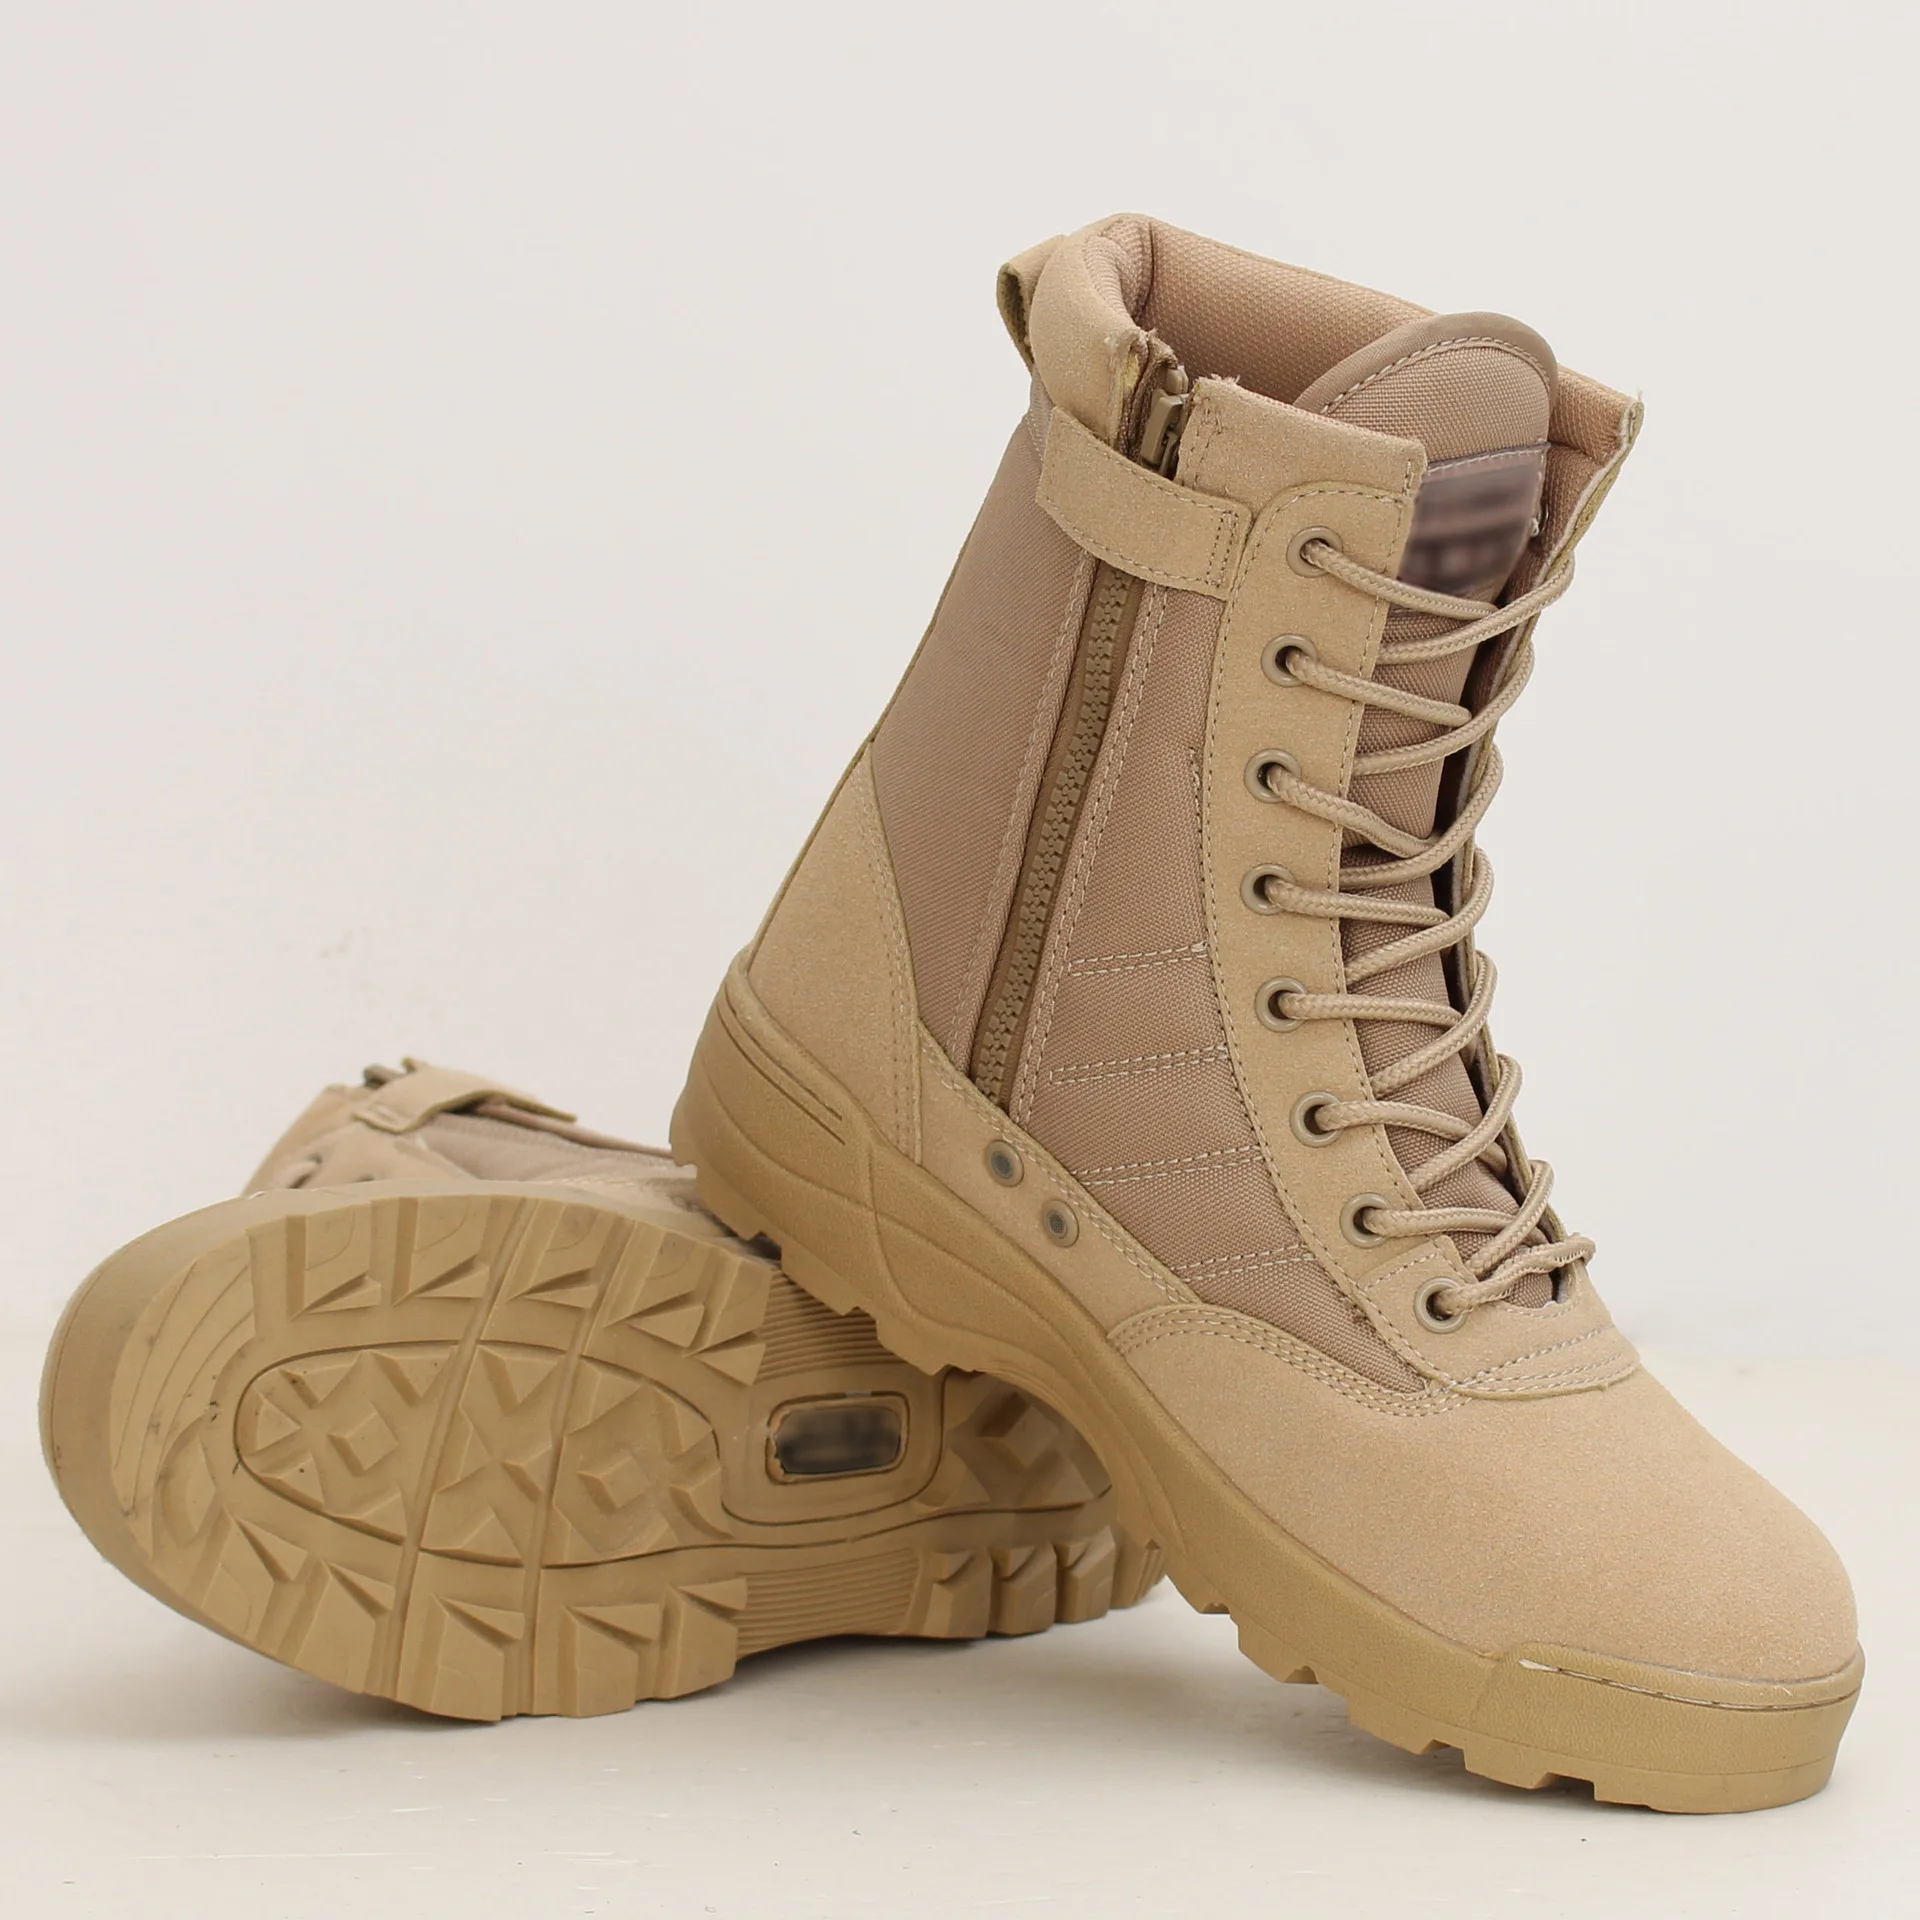 Мужские военные ботинки для пустыни; Мужская Рабочая безопасная обувь; Zapatos De Mujer; армейские ботинки; Zapatos; армейские ботинки на шнуровке; размер 46